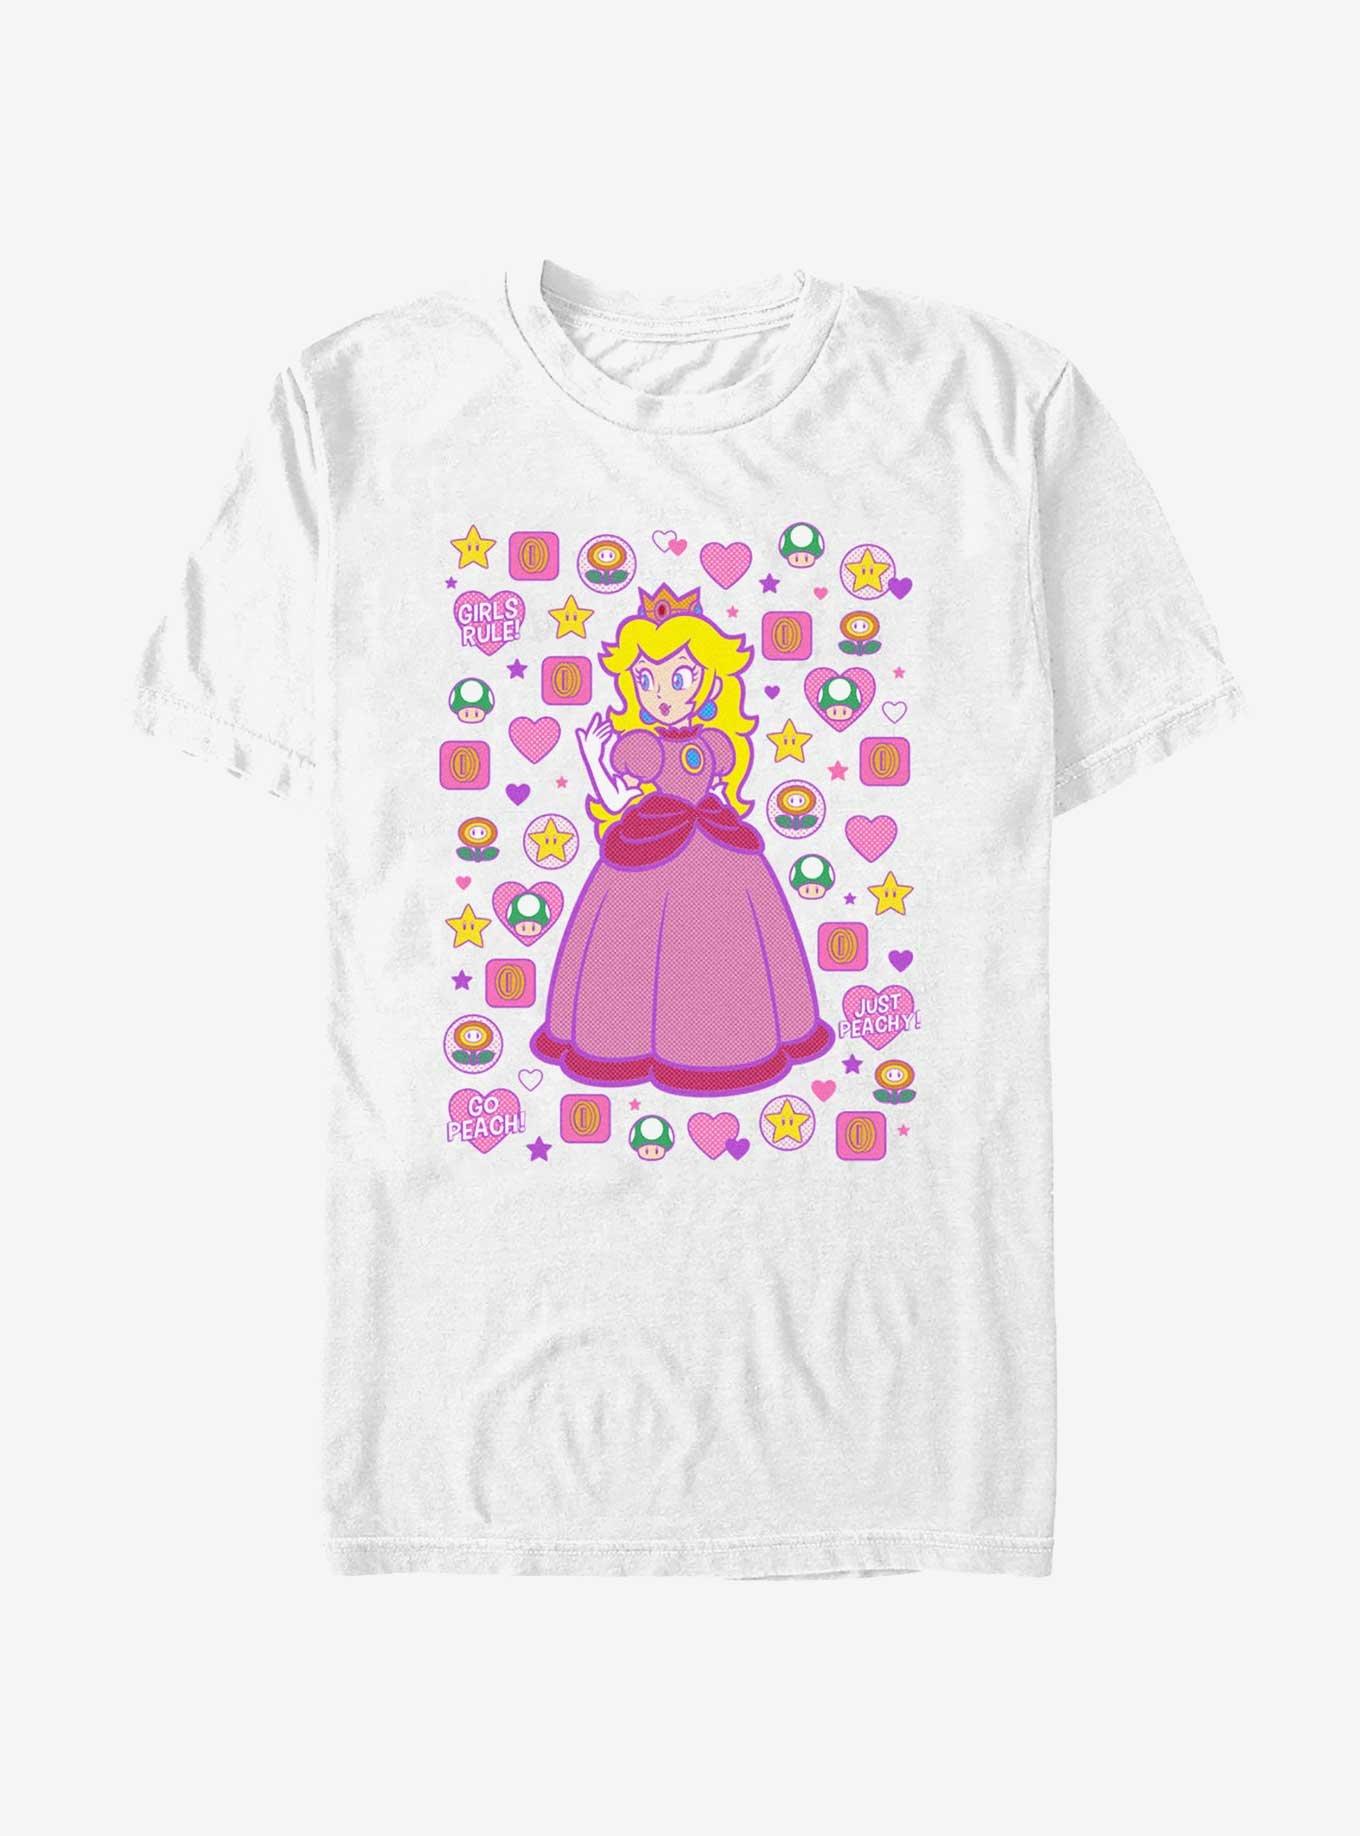 Mario Princess Peach T-Shirt